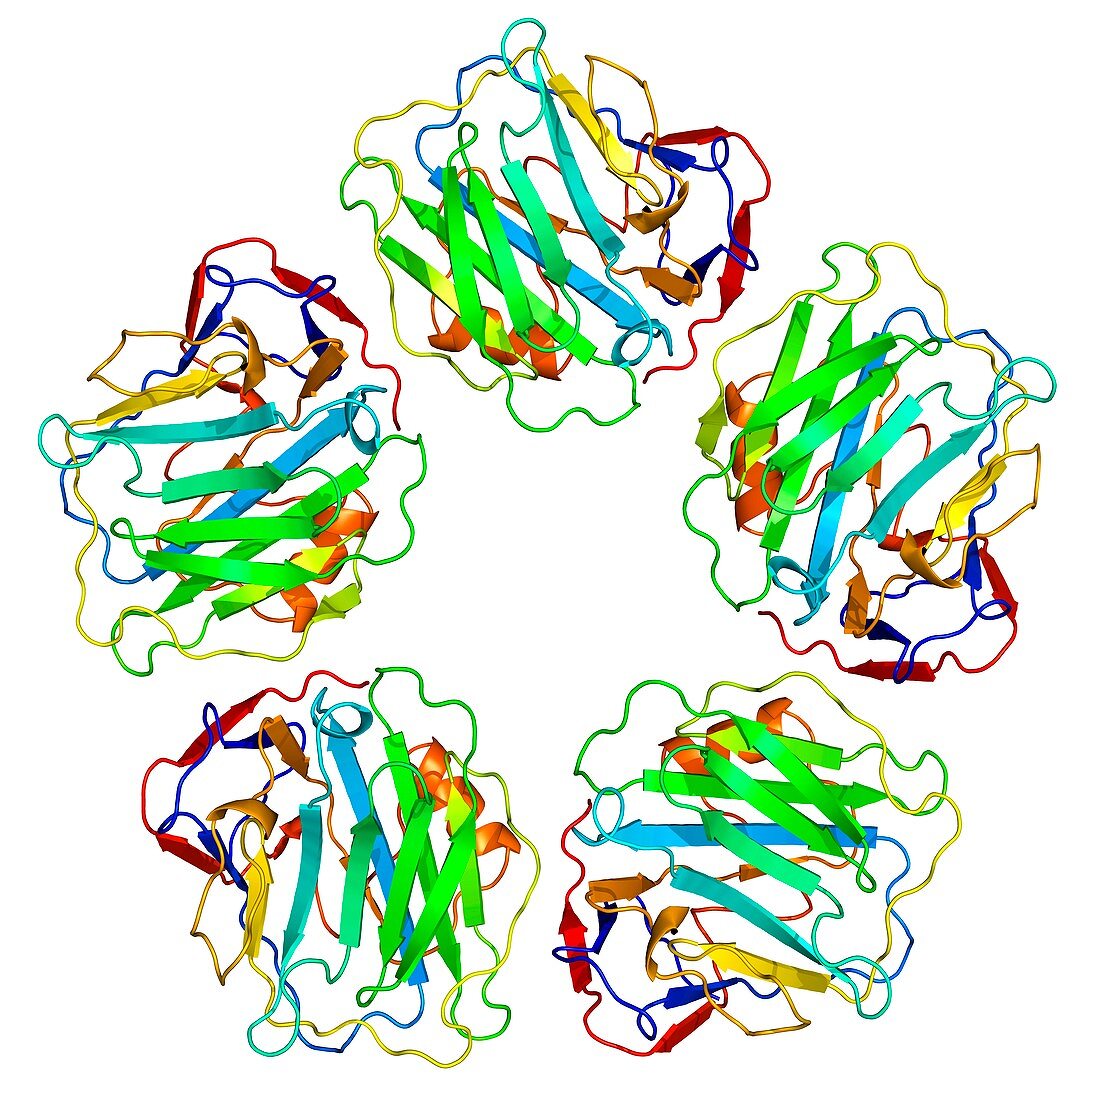 C-reactive protein, molecular model